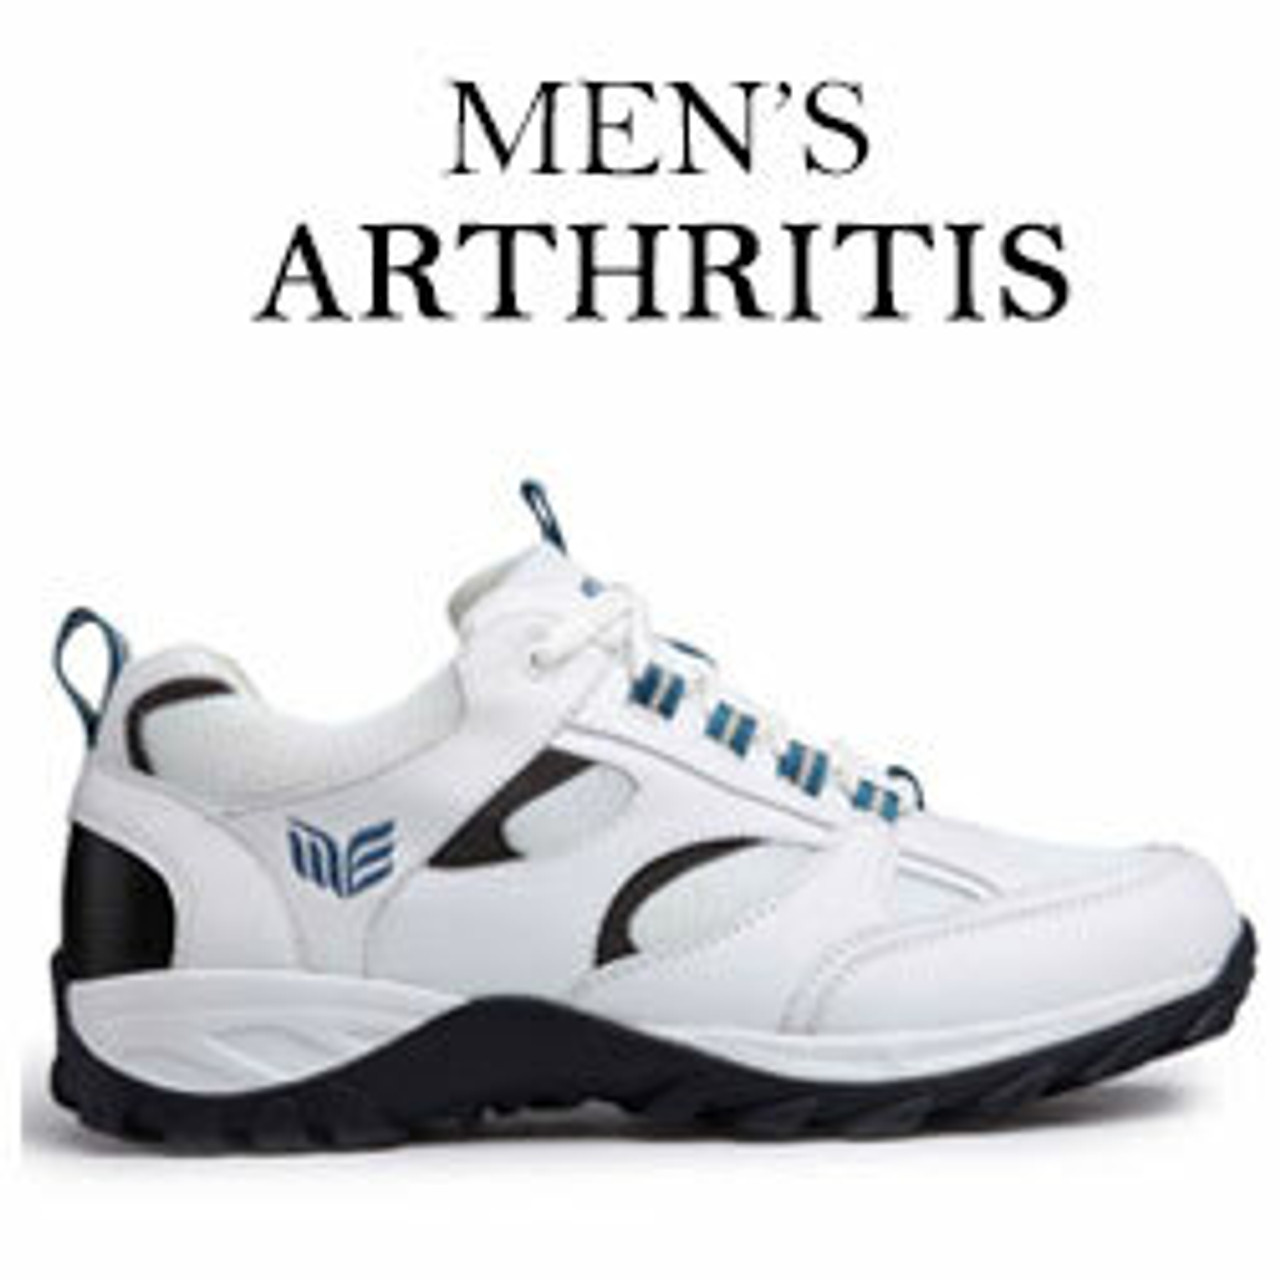 Best Arthritis Shoes | Men's Arthritis Shoes